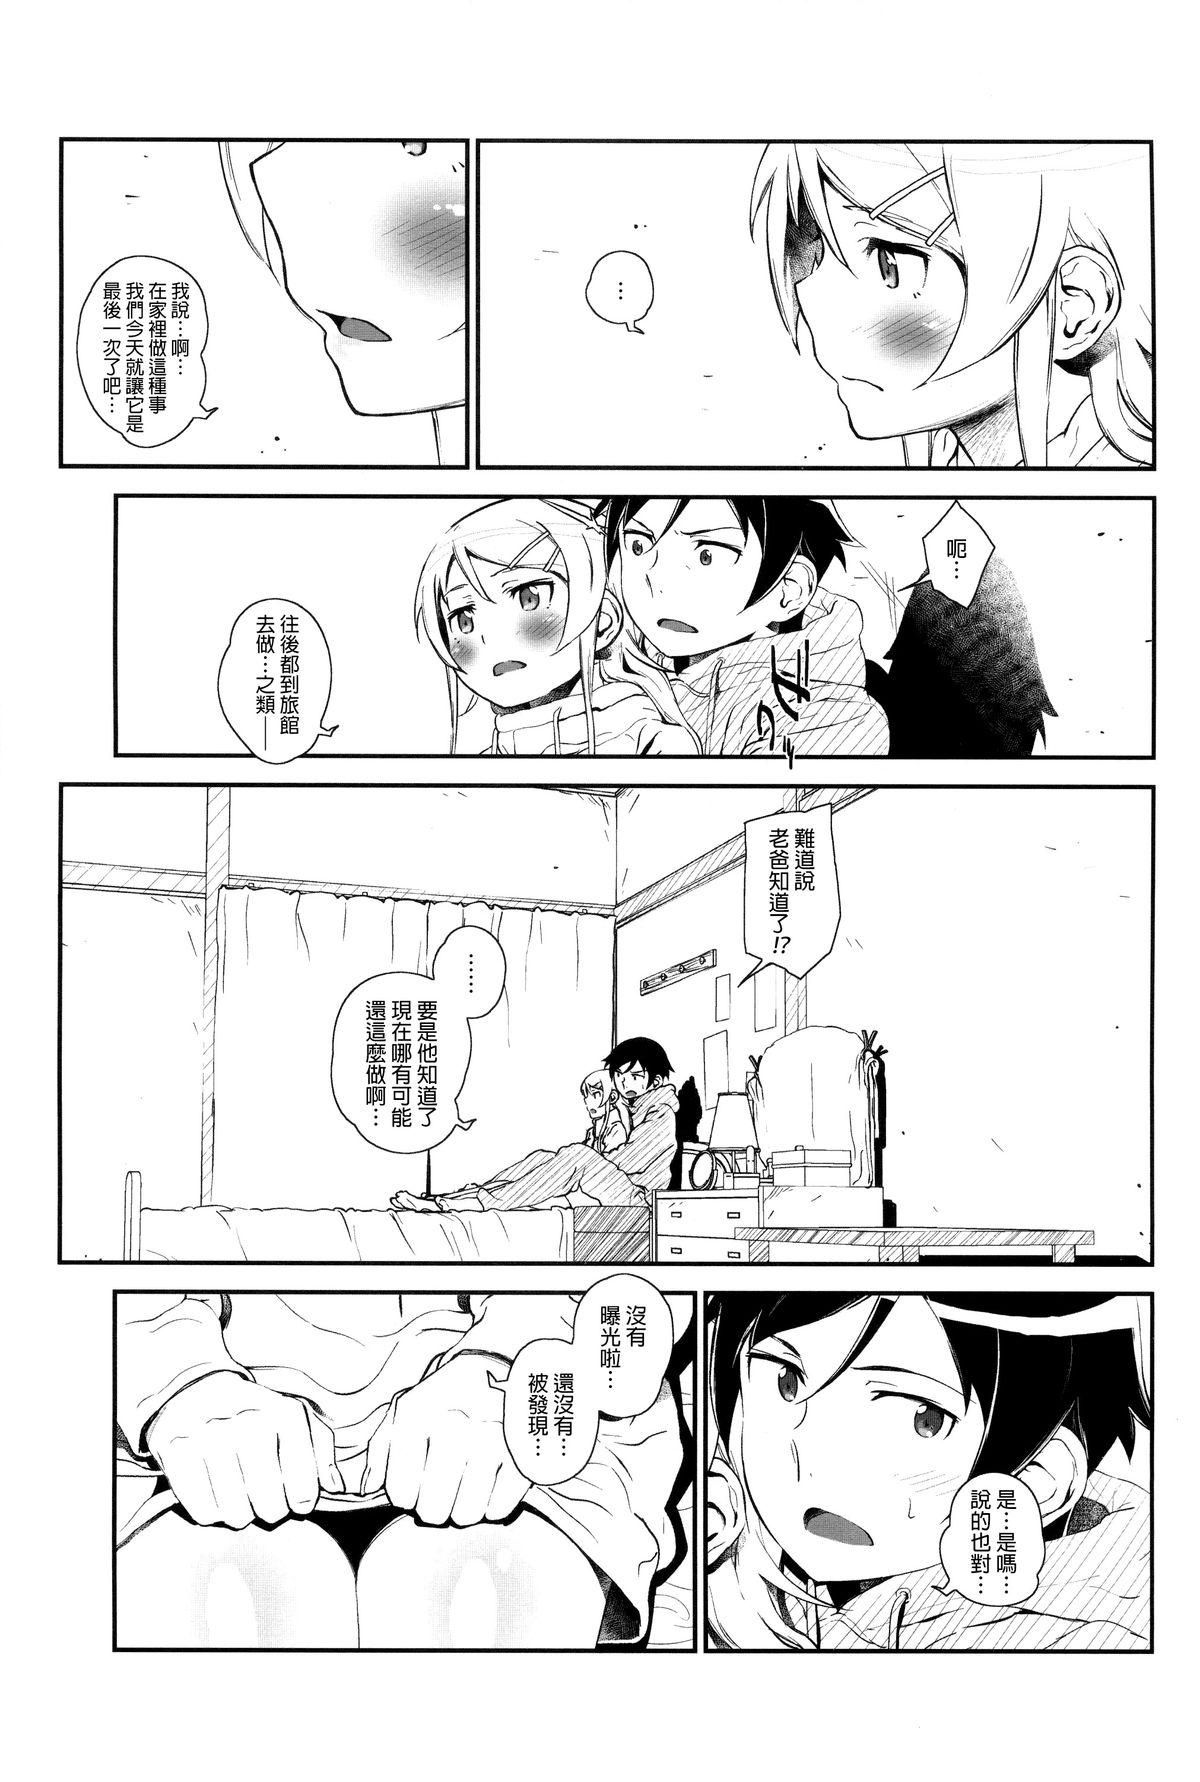 Love Making Hoshikuzu Namida 4 - Ore no imouto ga konna ni kawaii wake ga nai Oldvsyoung - Page 10